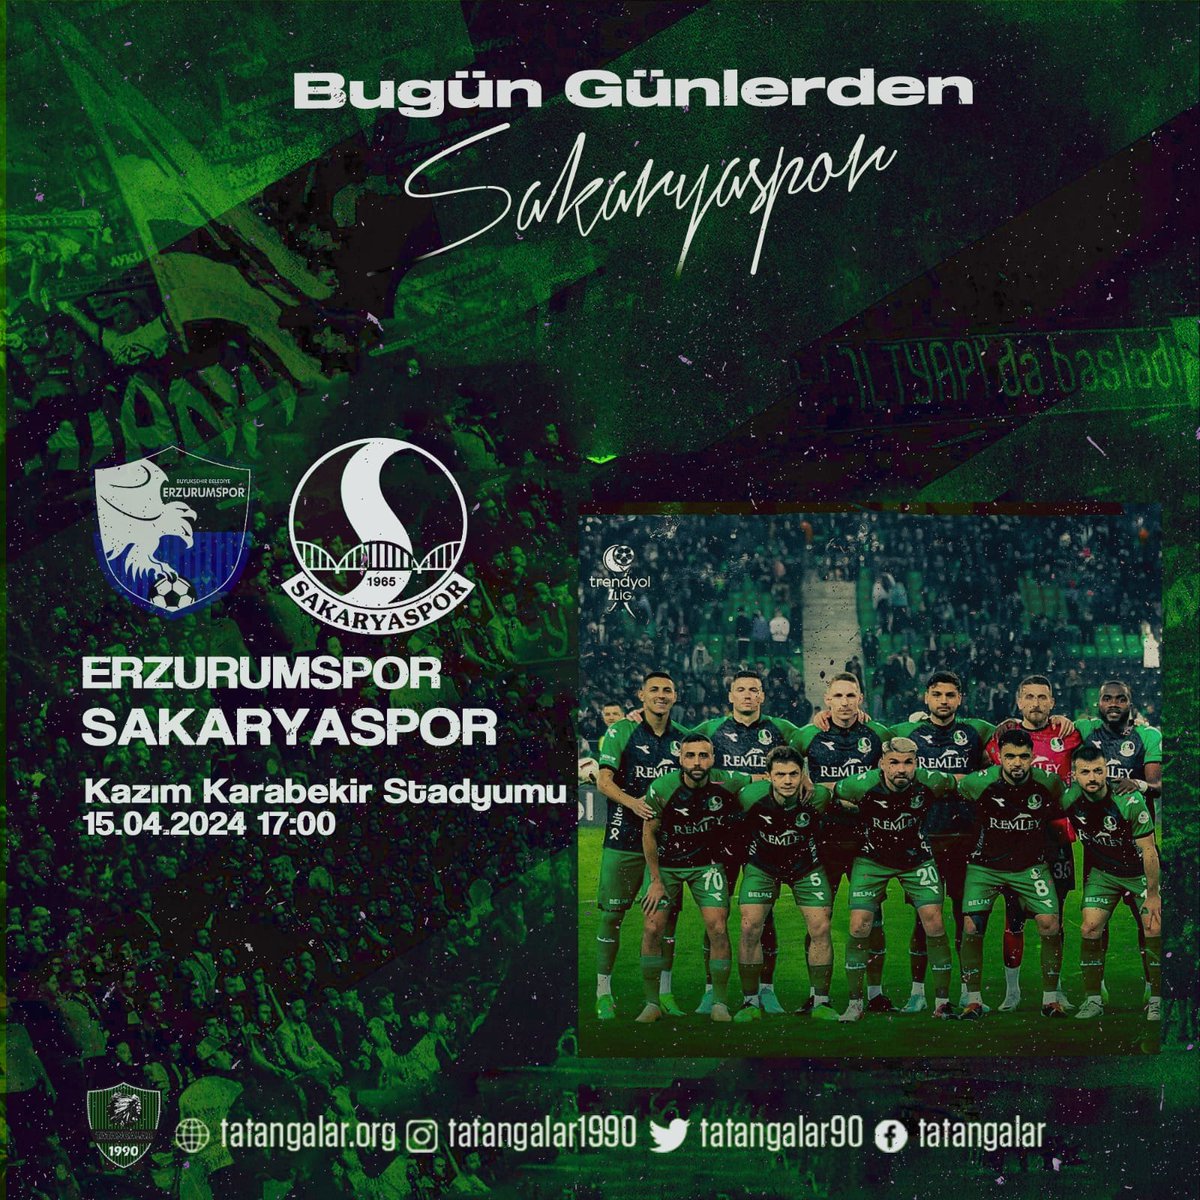 Bugün Günlerden Sakaryaspor! ⚽ Trendyol 1.Lig 30.Hafta 🆚 Erzurumspor 🕖 17:00 🏟️ Kazım Karabekir Stadyumu 📺 beIN Sports 2 & TRT Spor #ERZvSAK